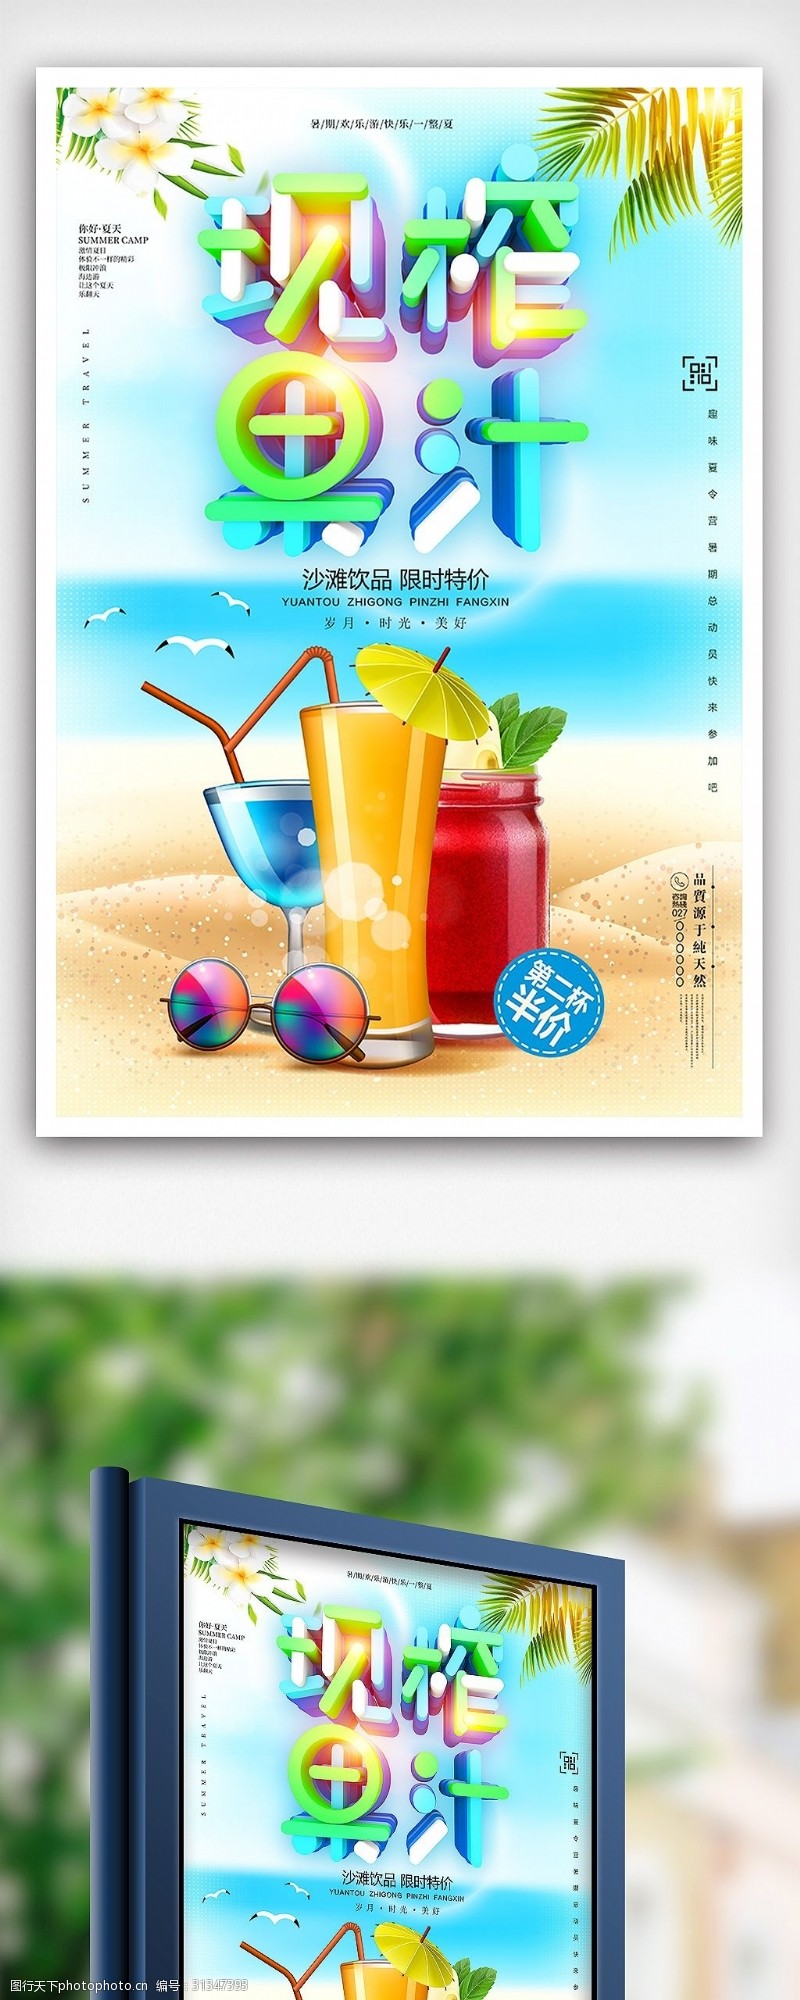 鲜榨果汁免费下载夏季鲜榨果汁促销海报设计模板